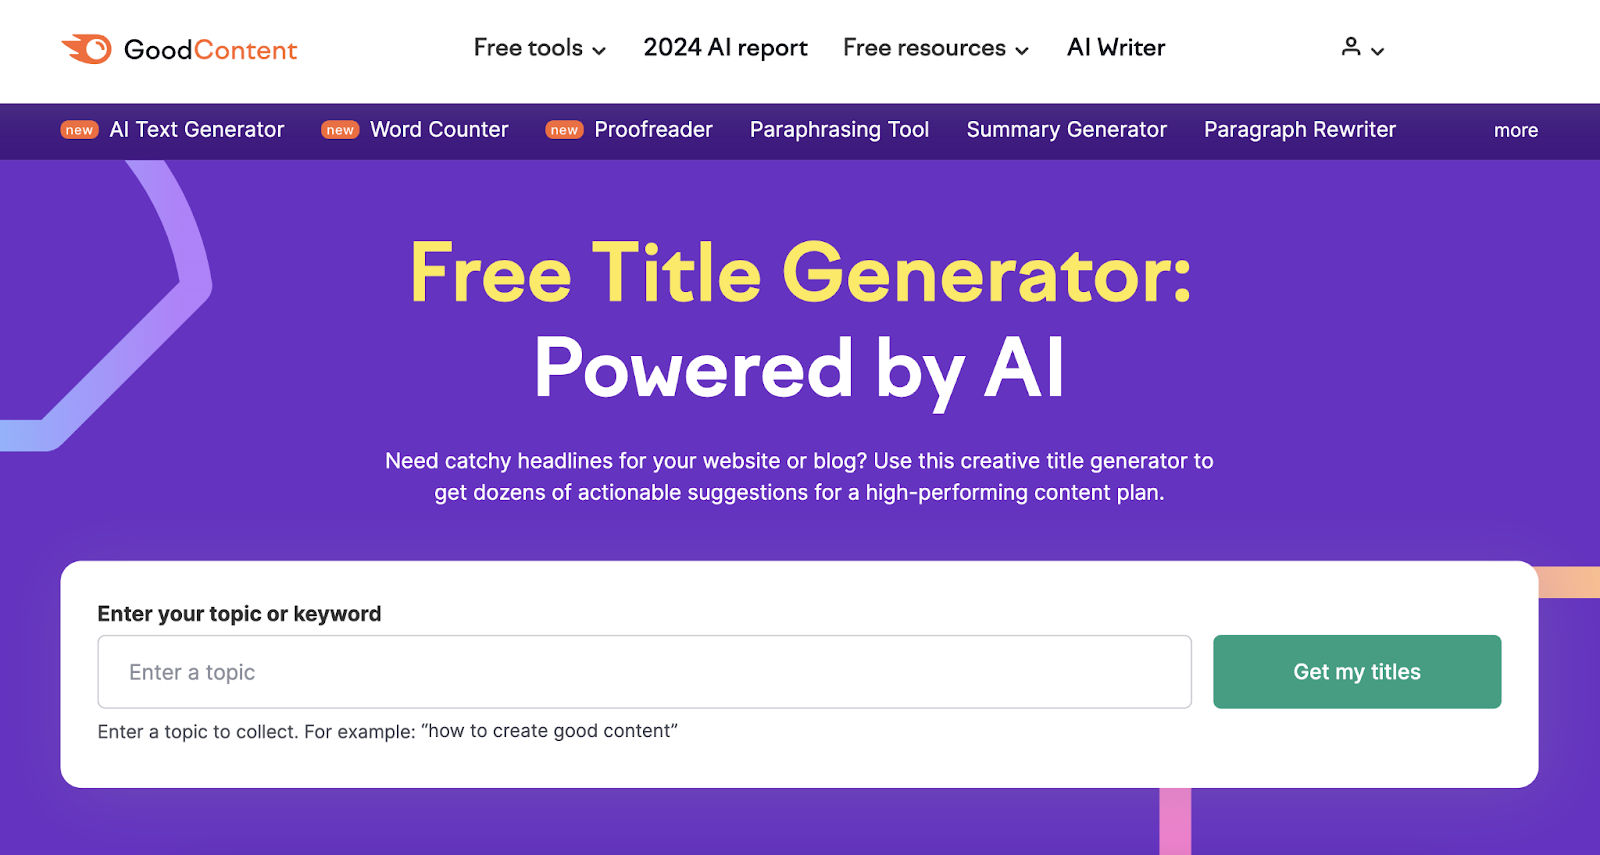 semrush free title generator tool landing page